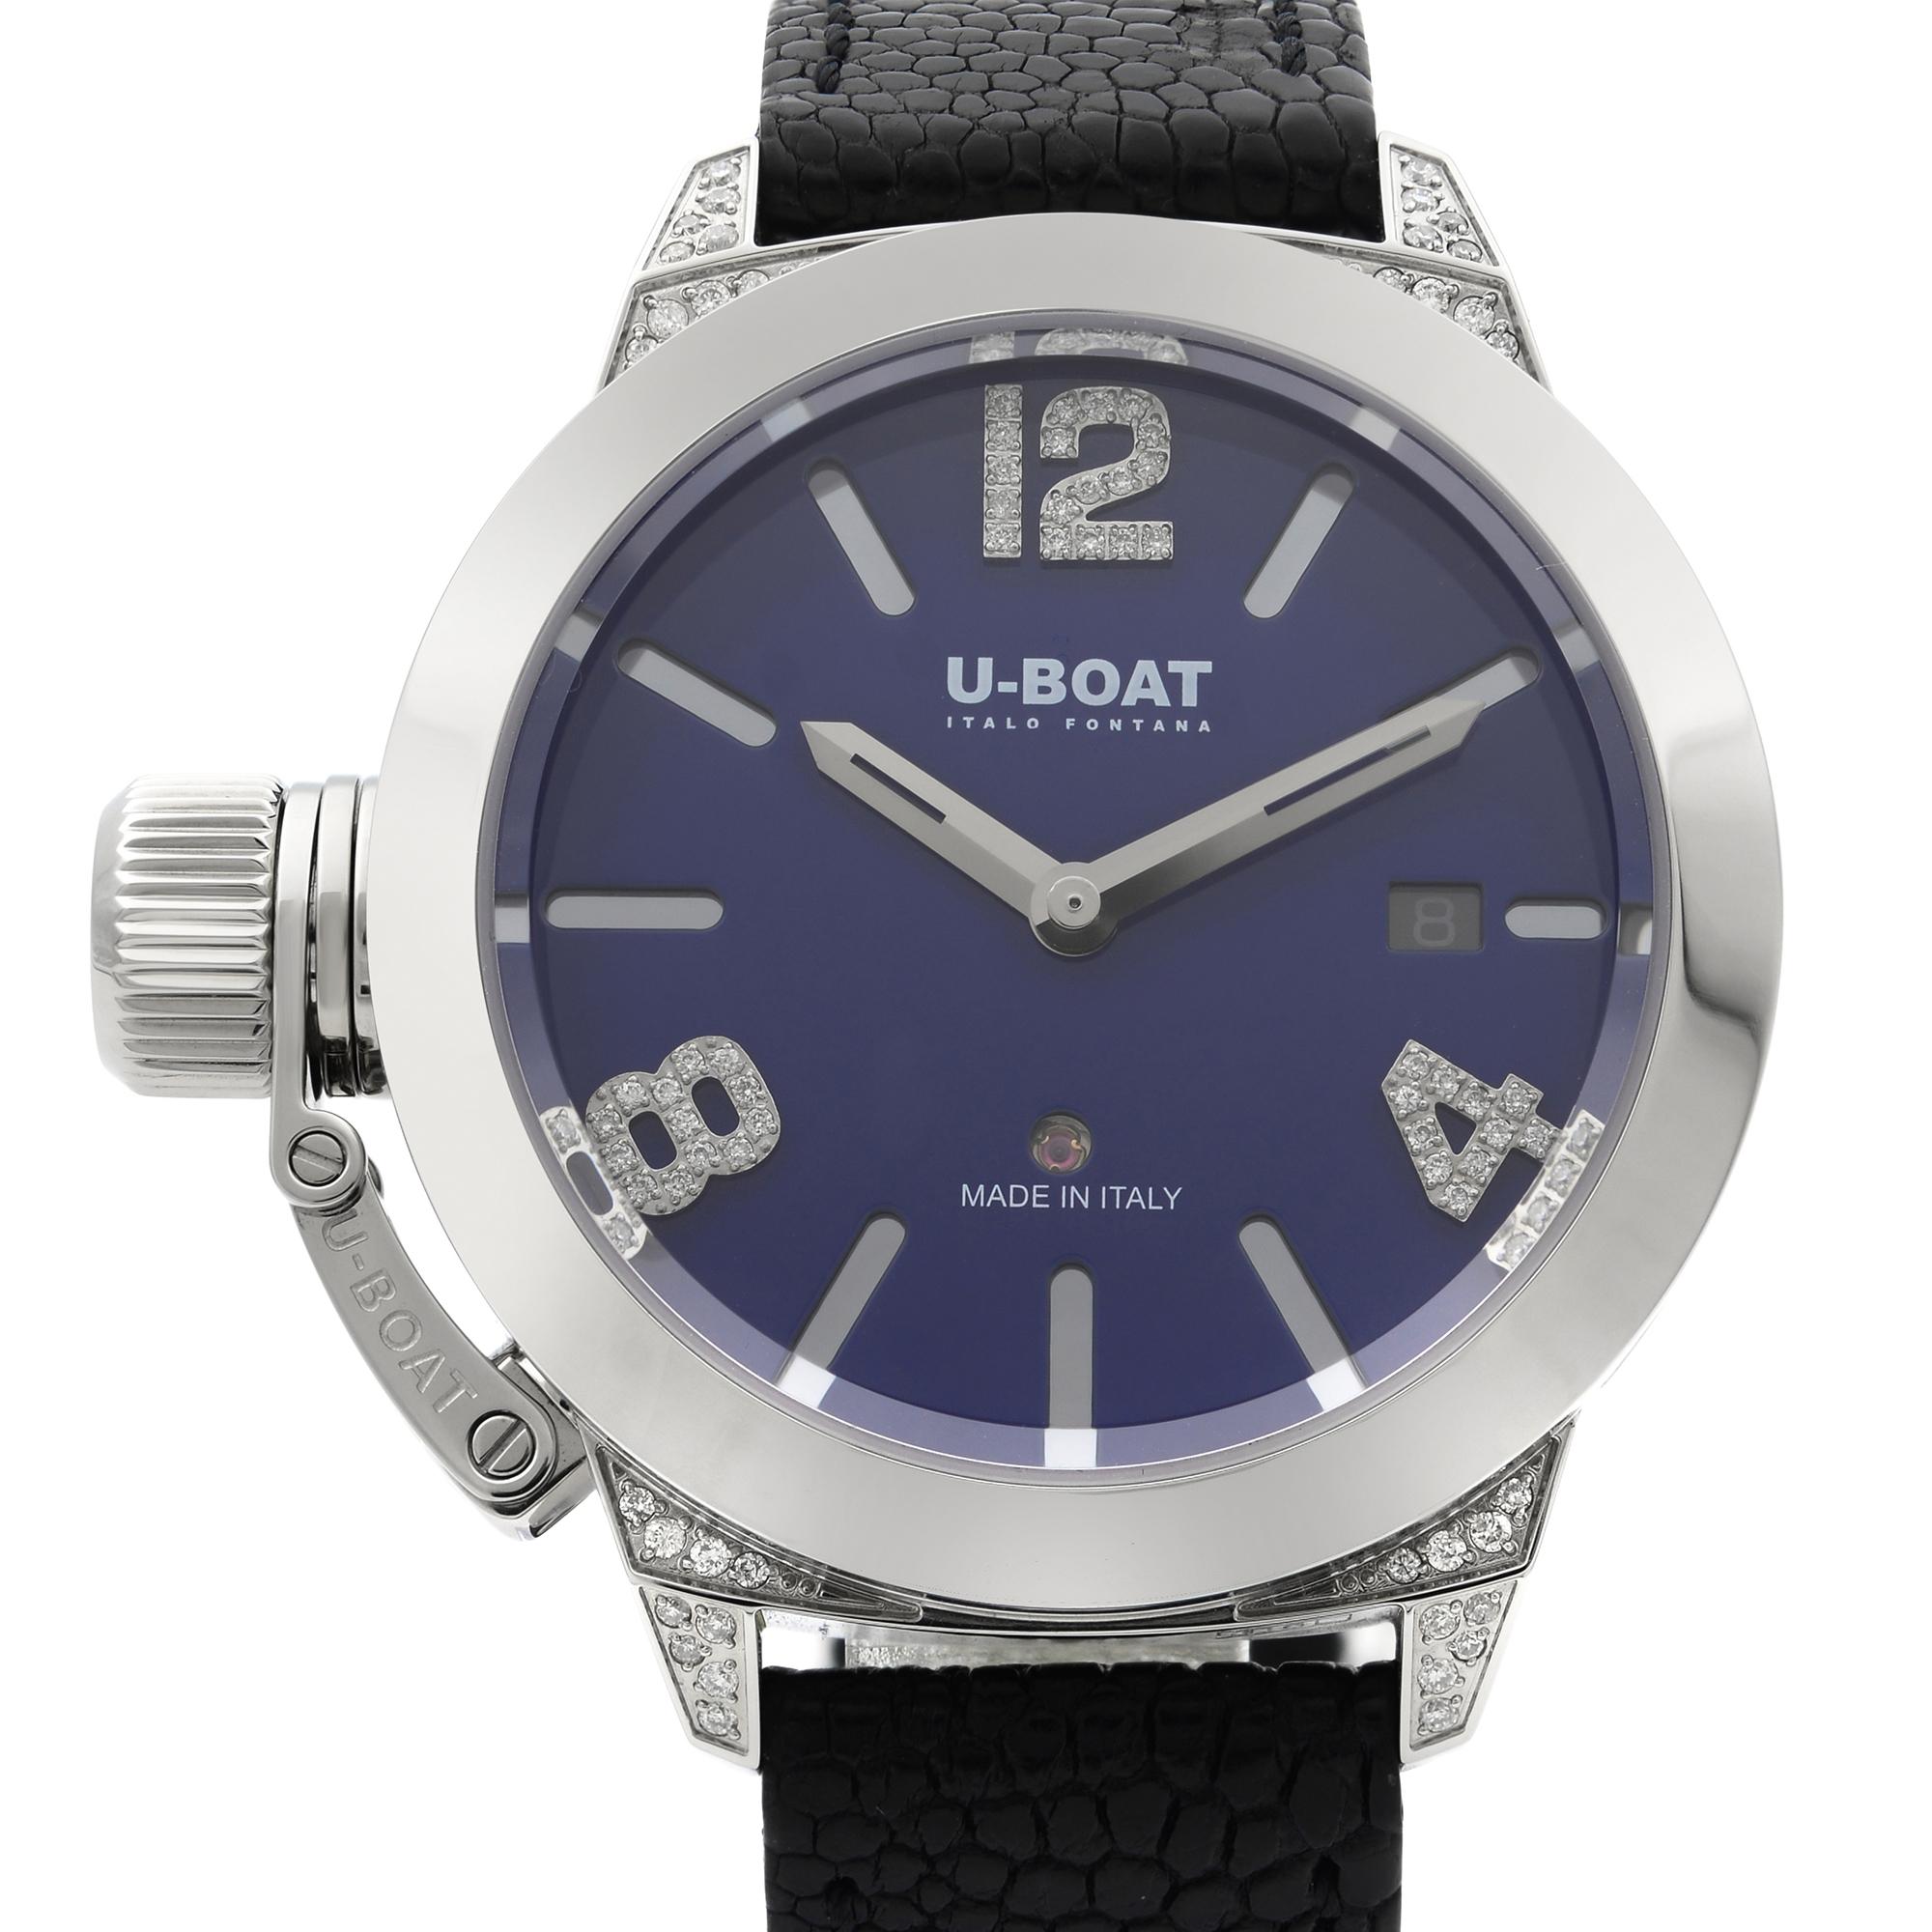 Diese nie getragene U-Boat Classico 7077 ist eine schöne Herrenuhr, die von einem mechanischen (automatischen) Uhrwerk angetrieben wird, das in einem Edelstahlgehäuse untergebracht ist. Sie hat ein rundes Gesicht, eine Datumsanzeige, ein